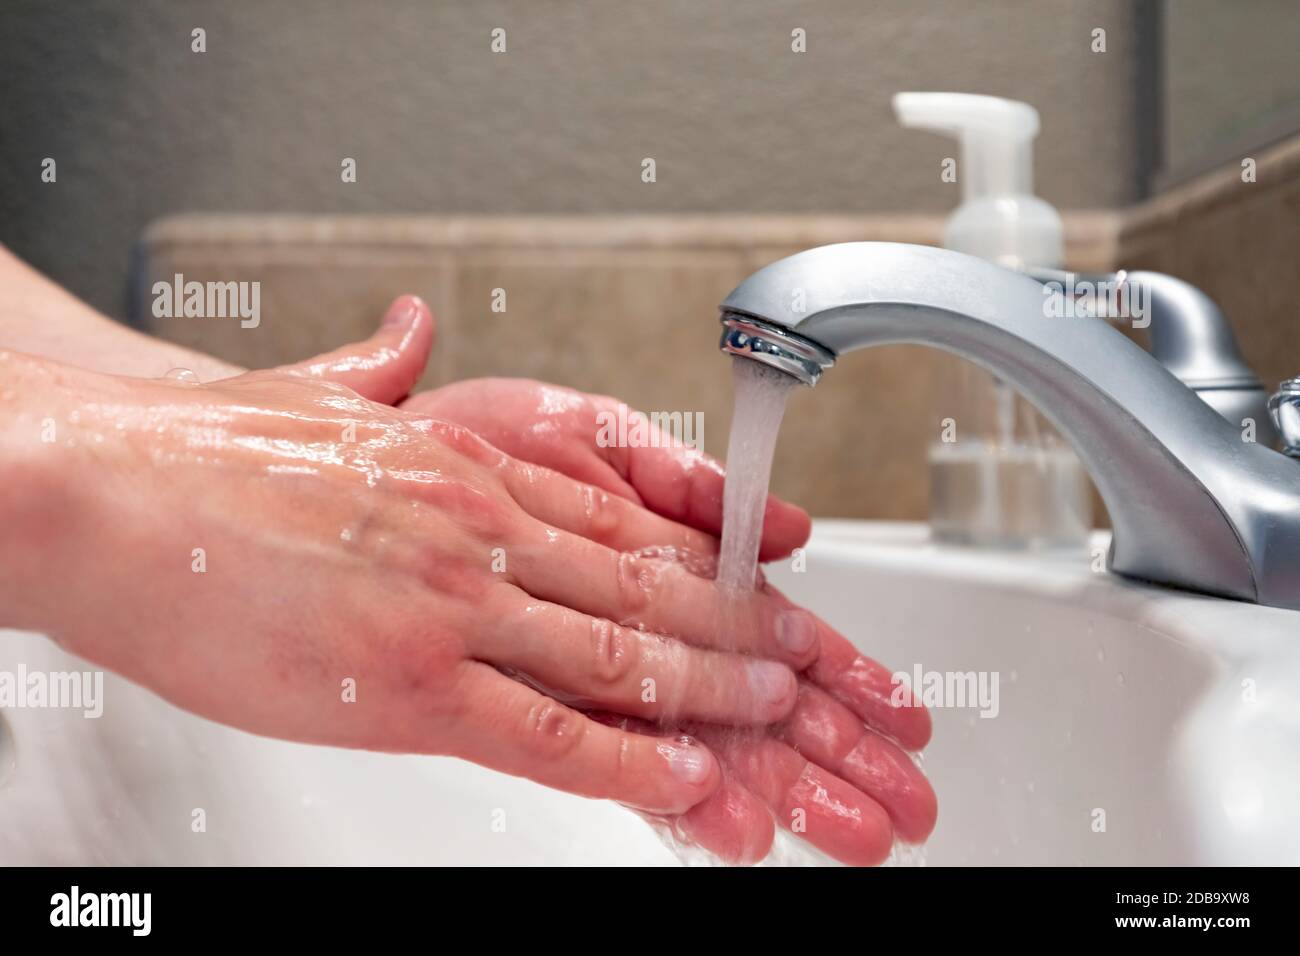 Lavando le mani con acqua nel lavello del bagno, igiene per rimanere in salute Foto Stock